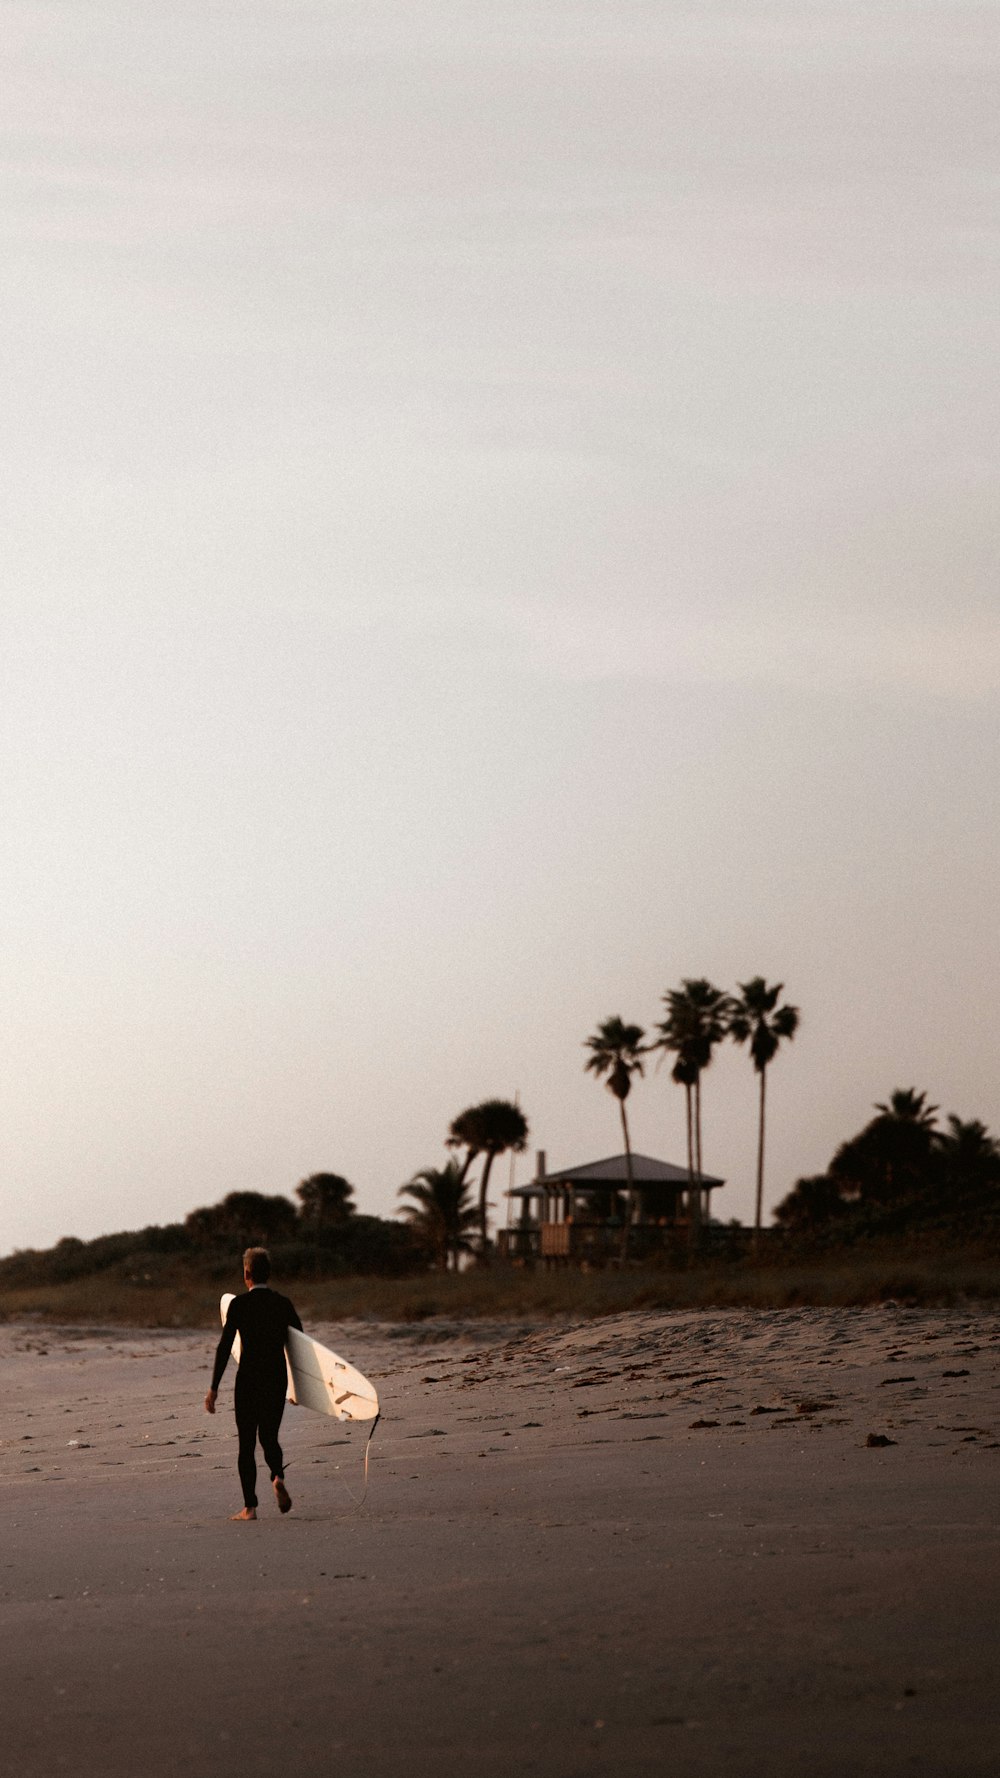 a man walking across a beach holding a surfboard